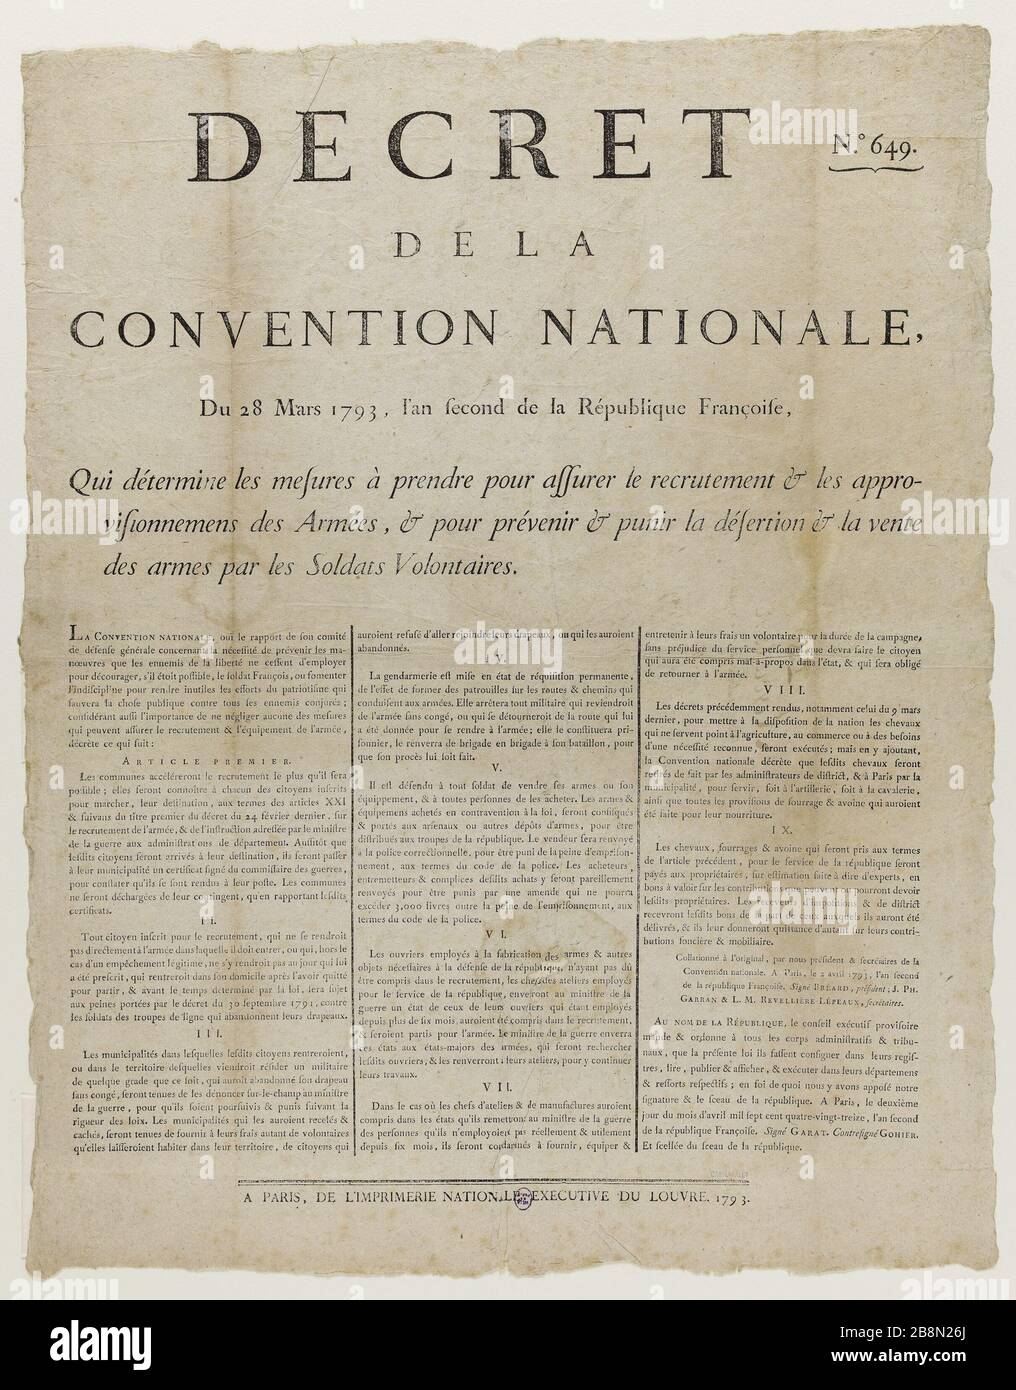 DECREE OF THE CONVENTION NATIONAL 28 MARS 1793 Anonyme. 'Décret de la Convention Nationale du 28 mars 1793'. Typographie. 1793. Paris, musée Carnavalet. Stock Photo